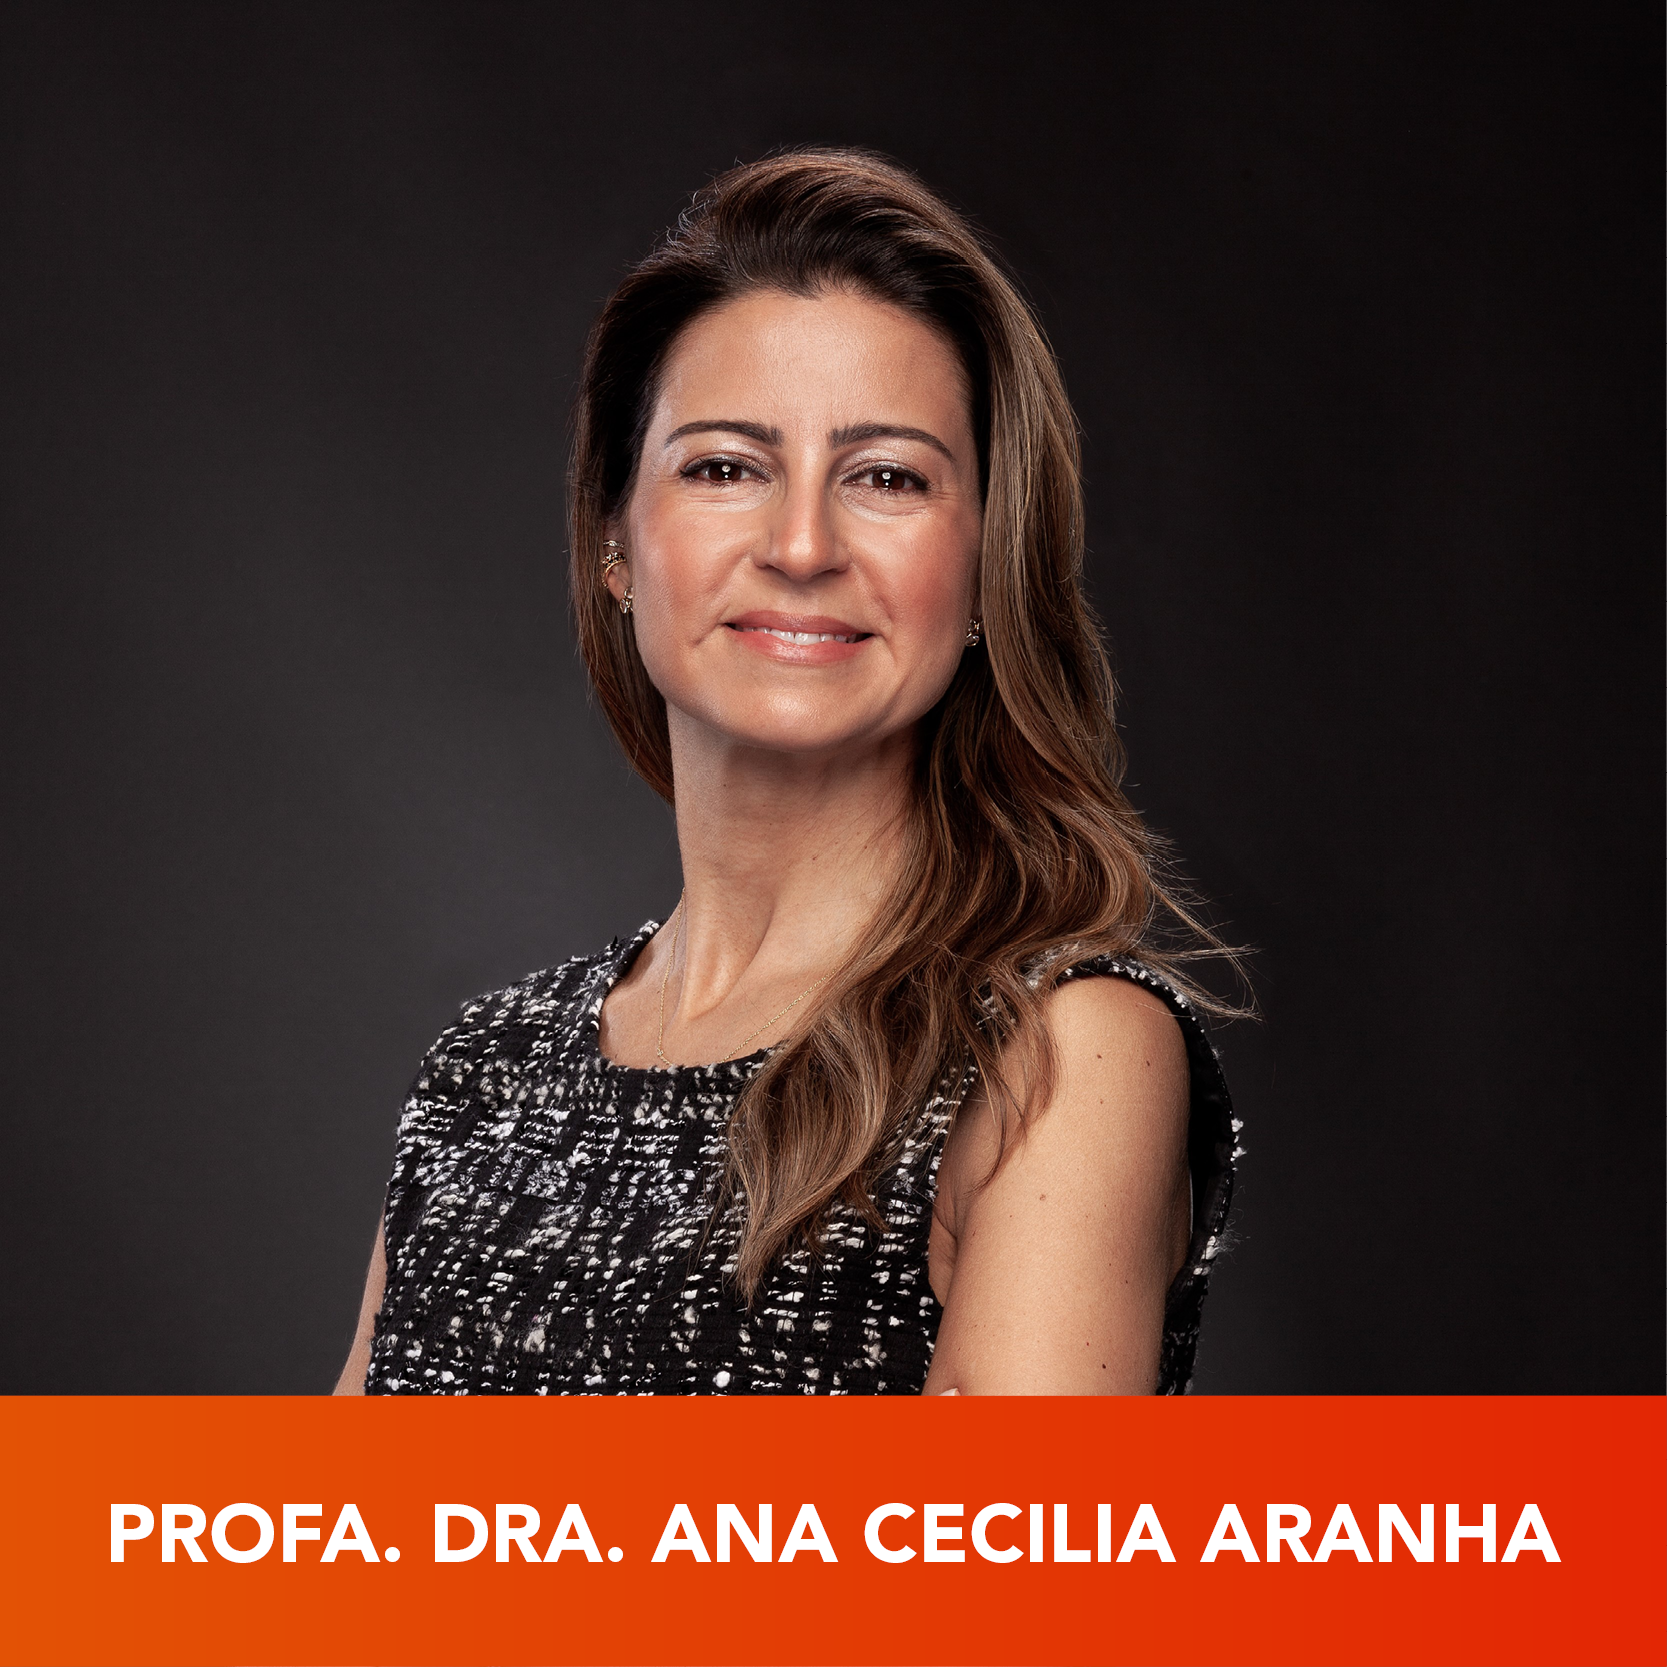 Ana Cecília Aranha